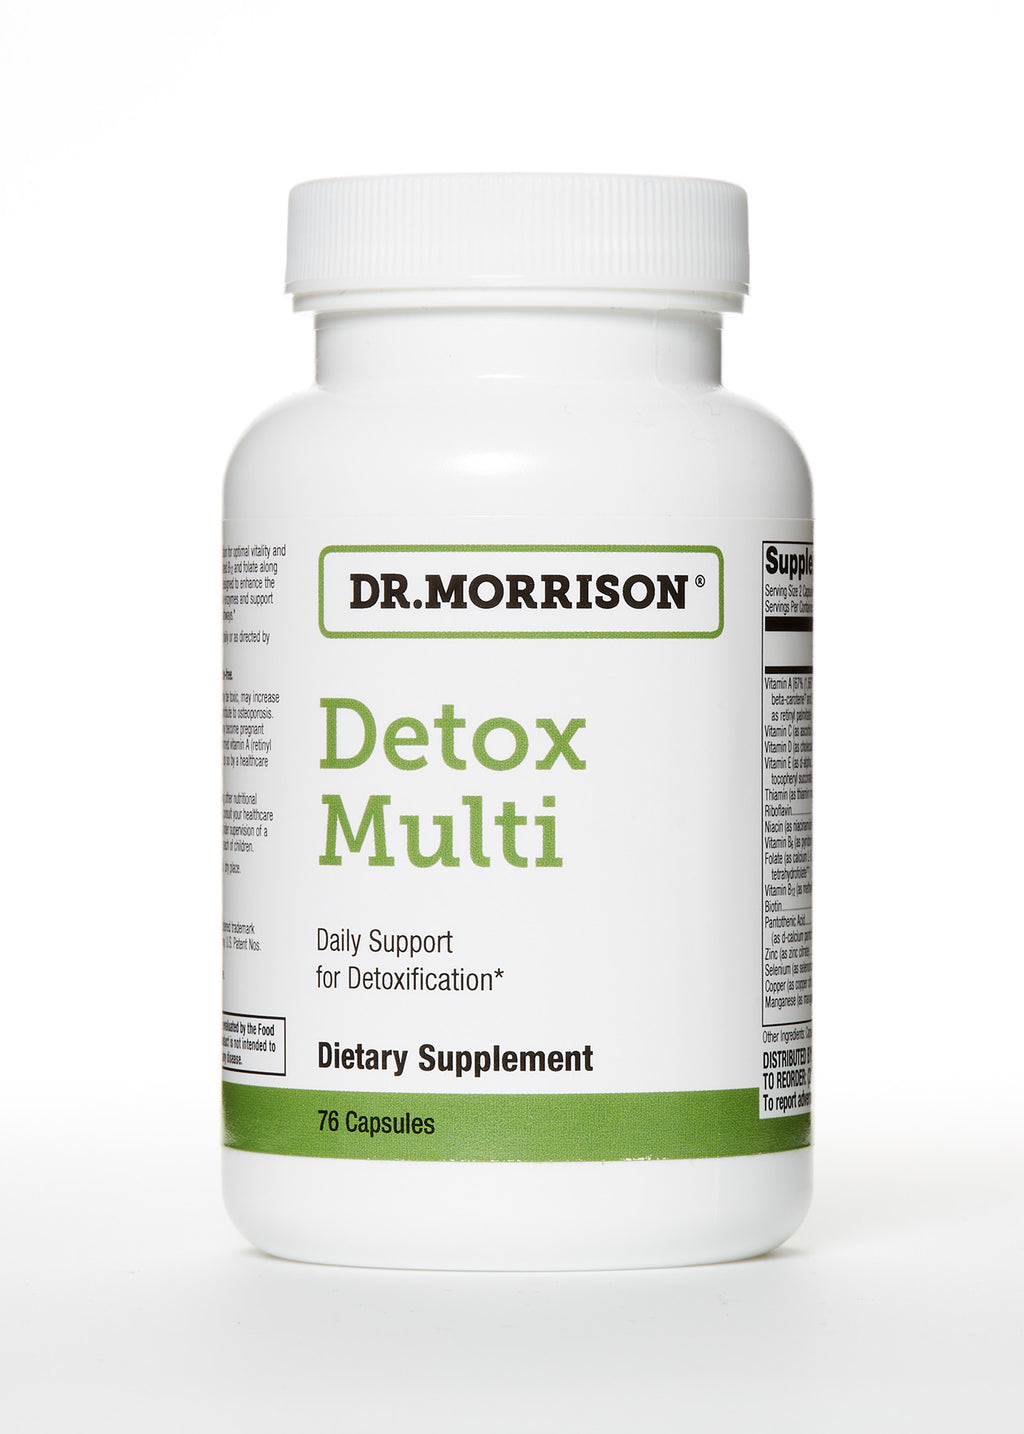 Multivitamin for detoxification